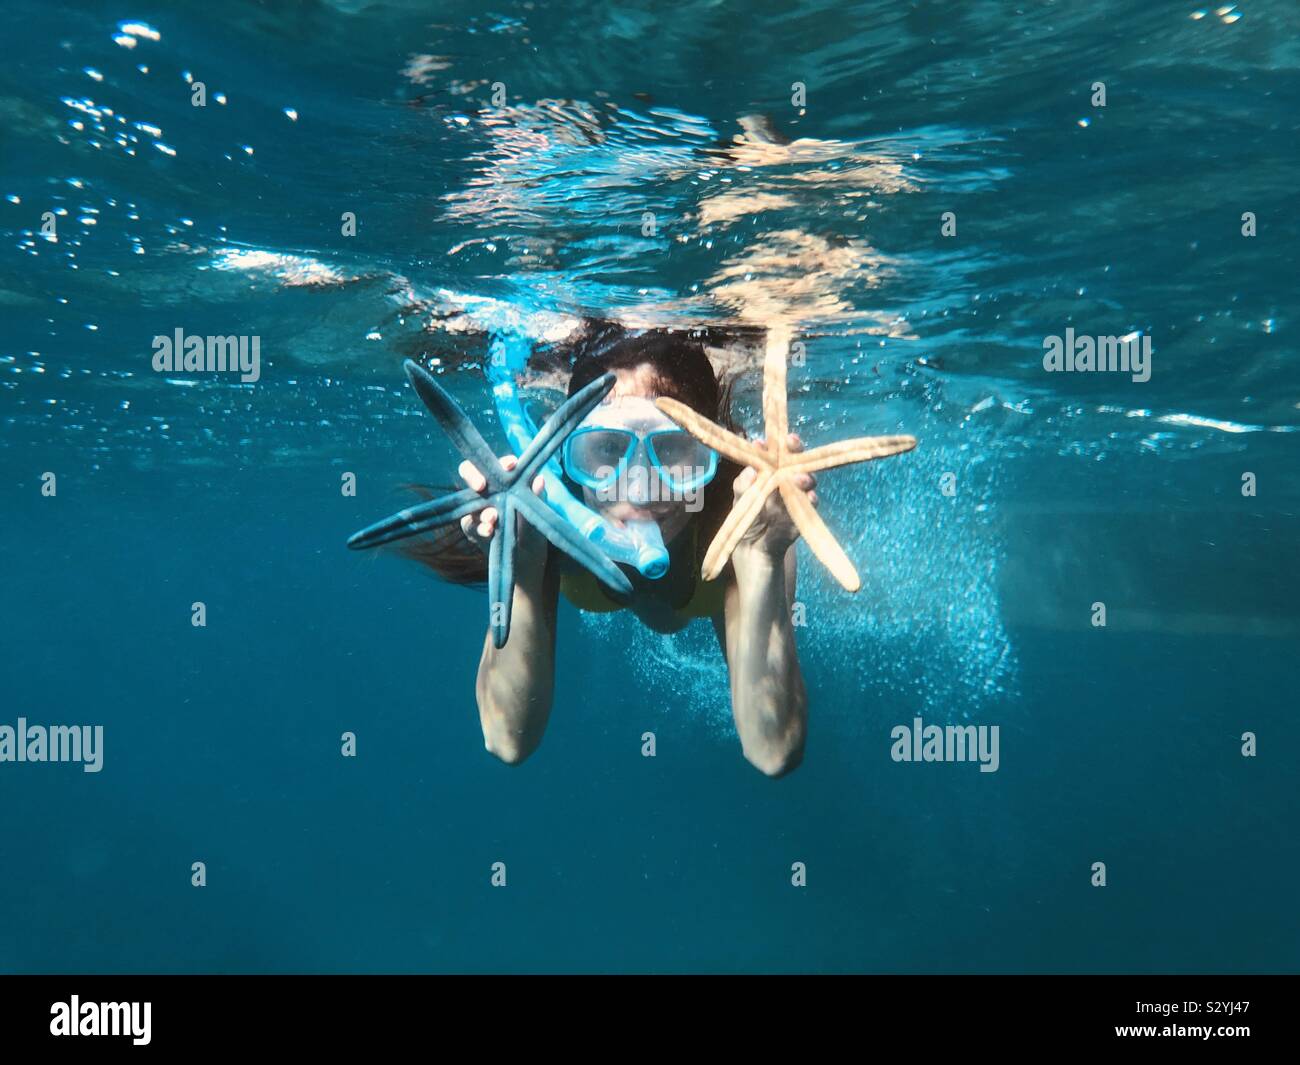 Underwater picture taken in Indonesian ocean Stock Photo